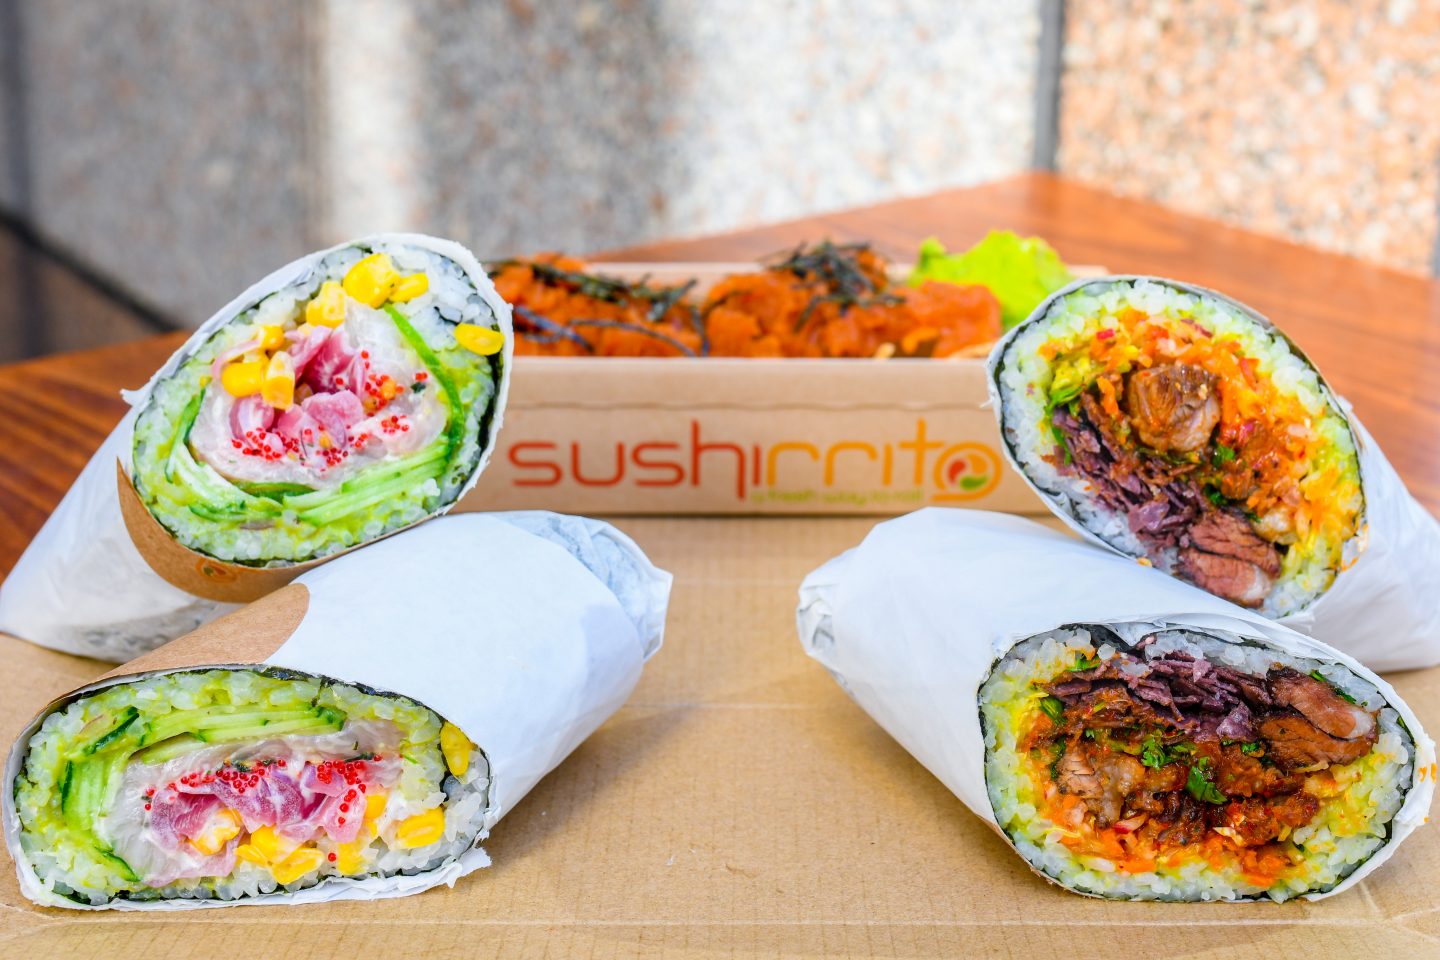 Sushirrito: The Original Sushi Burrito - Nomtastic Foods